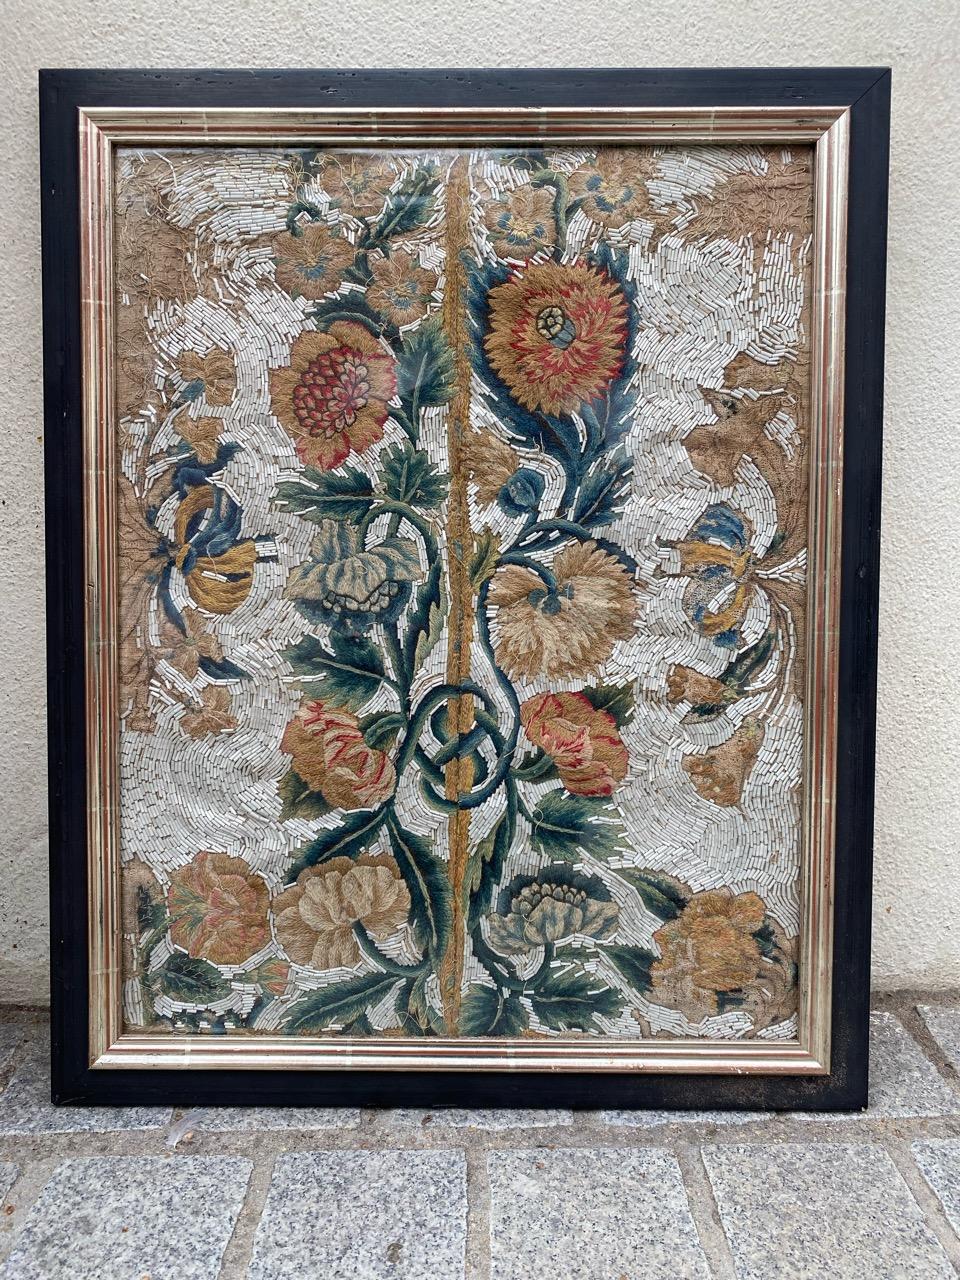 Très belle et rare broderie ancienne, probablement française, du 17ème siècle, avec des motifs floraux et de belles couleurs naturelles, brodée avec de la laine, 

Dimensions avec le cadre : 45 x 56 cm
Broderie seule : 37 x 48 cm.

✨✨✨
